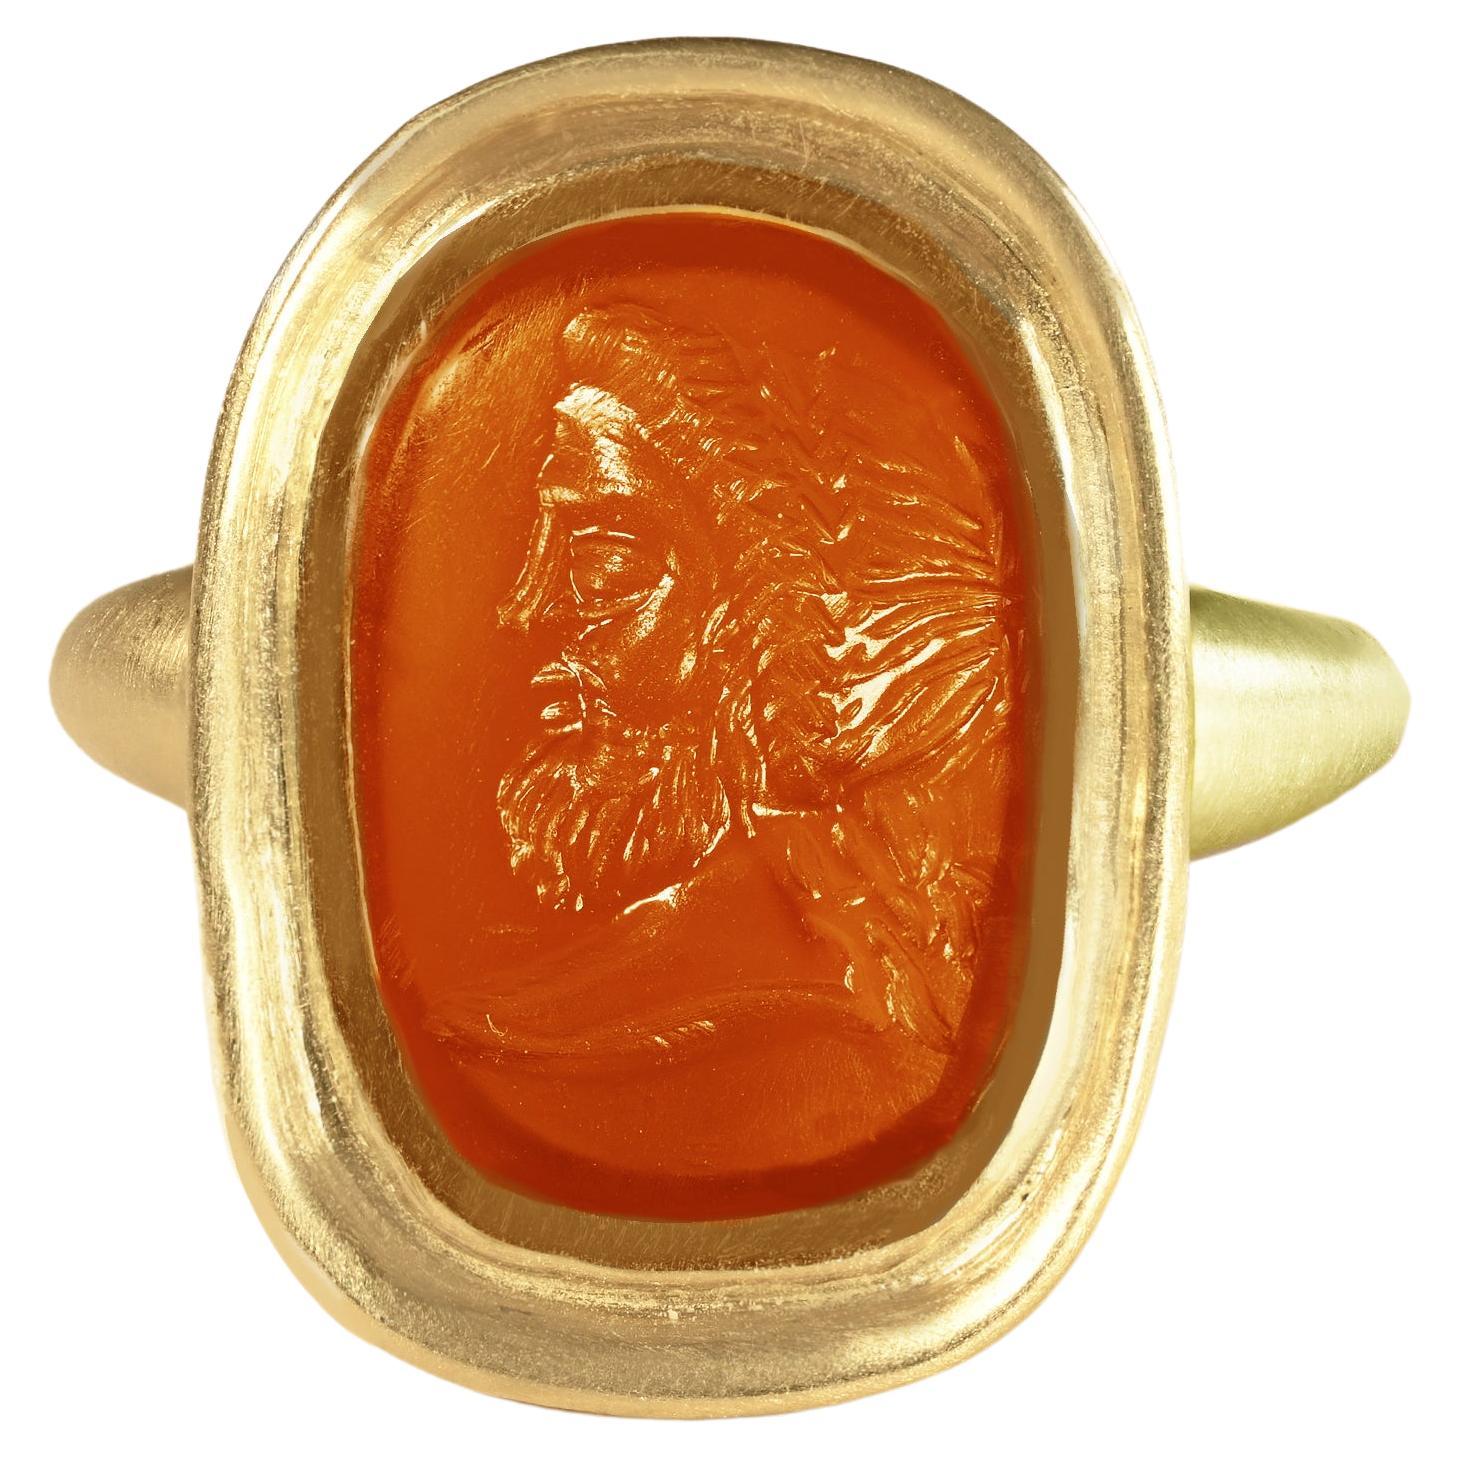 Authentischer römischer Intaglio-Ring (1.-2. Jh. n. Chr.) aus 18-karätigem Gold mit der Darstellung des Gottes Zeus